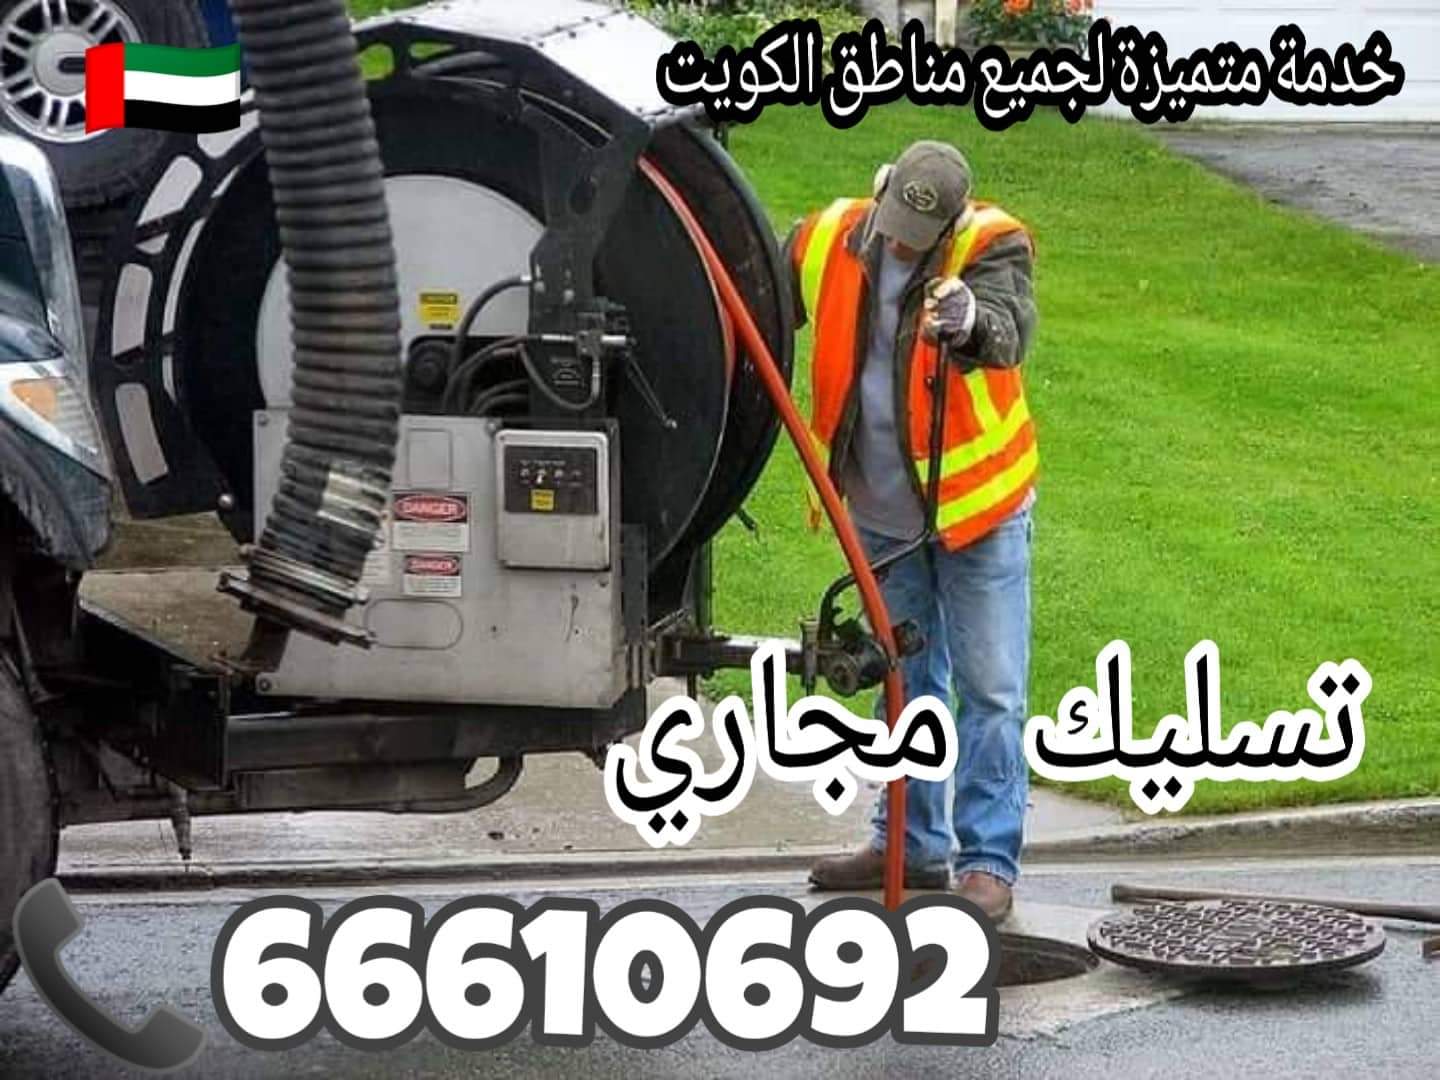 تسليك مجاري جنوب السرة / 66610692 / صيانة وتركيب ادوات صحية الكويت